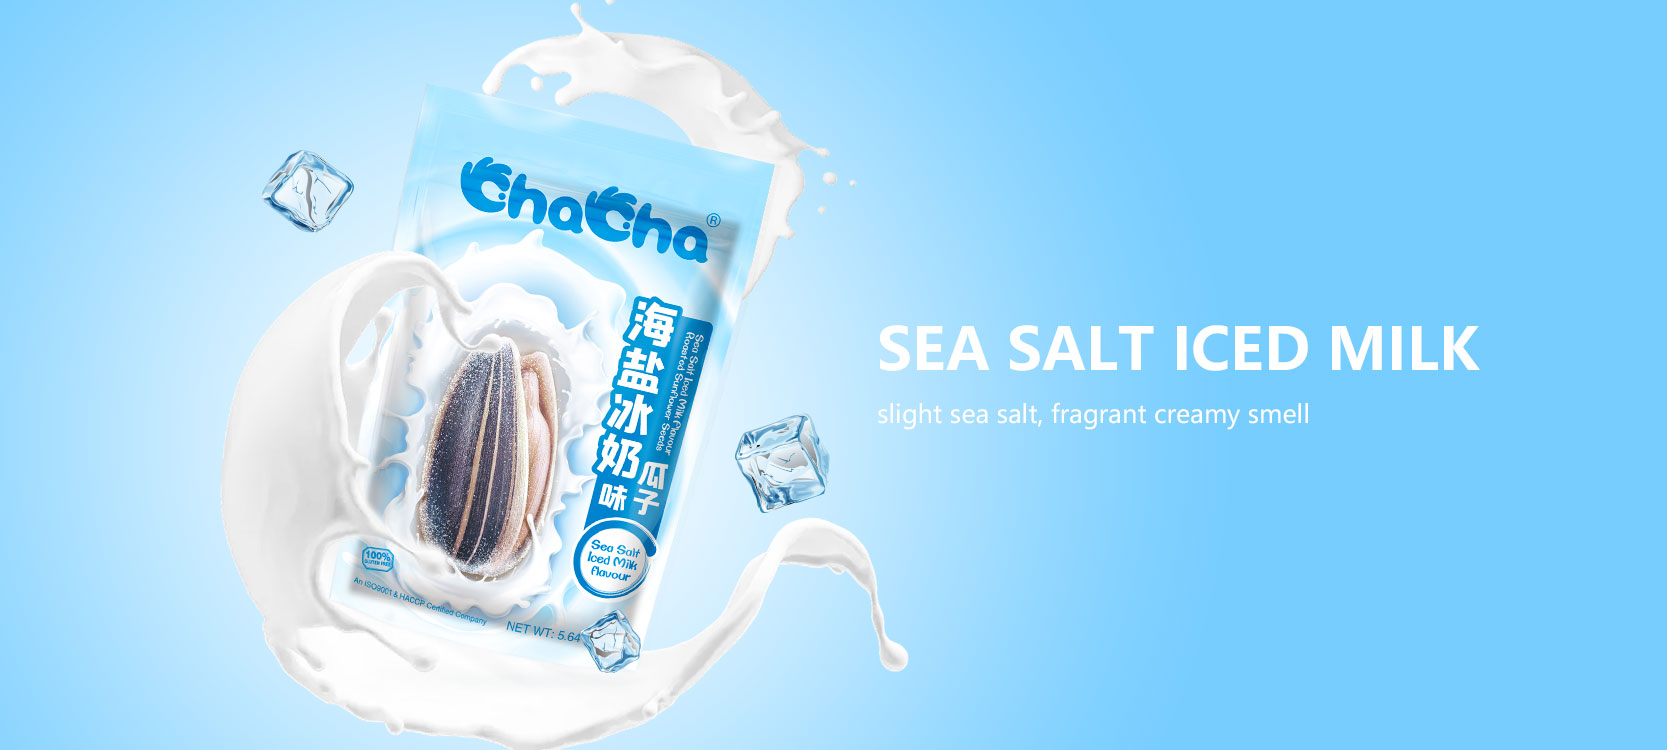 Sea Salt Iced Milk Flavor